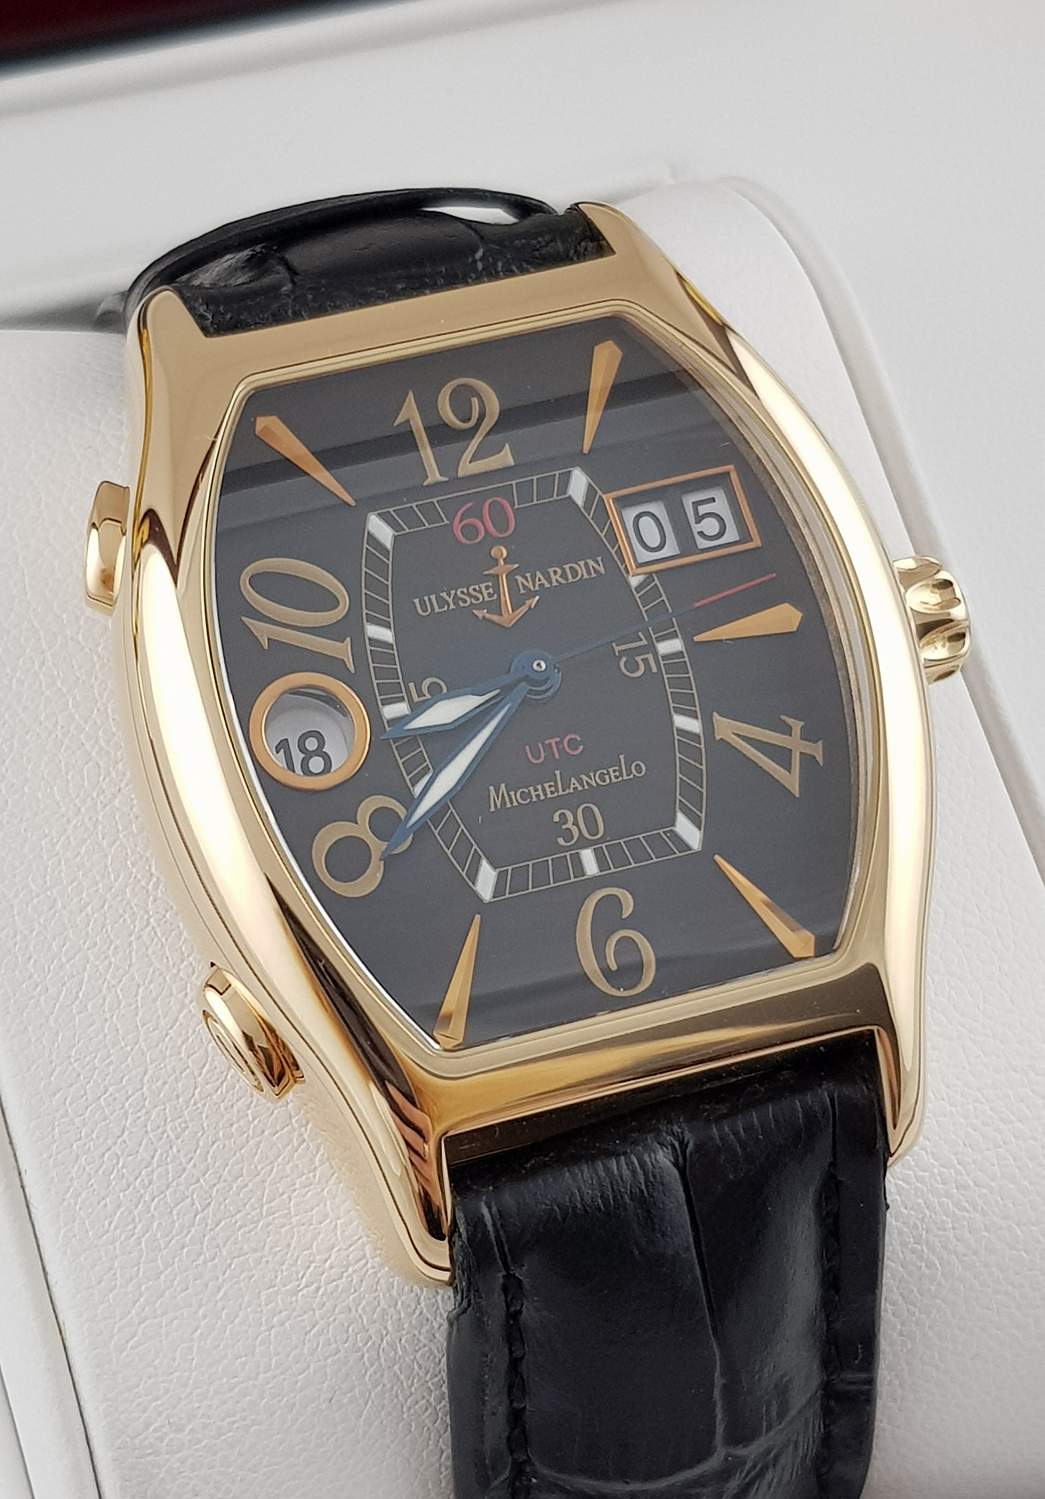 Часы Ulysse Nardin Michelangelo UTC Dual Time 226-68/52 (819) - купить в  Москве с выгодой, наличие и актуальная стоимость